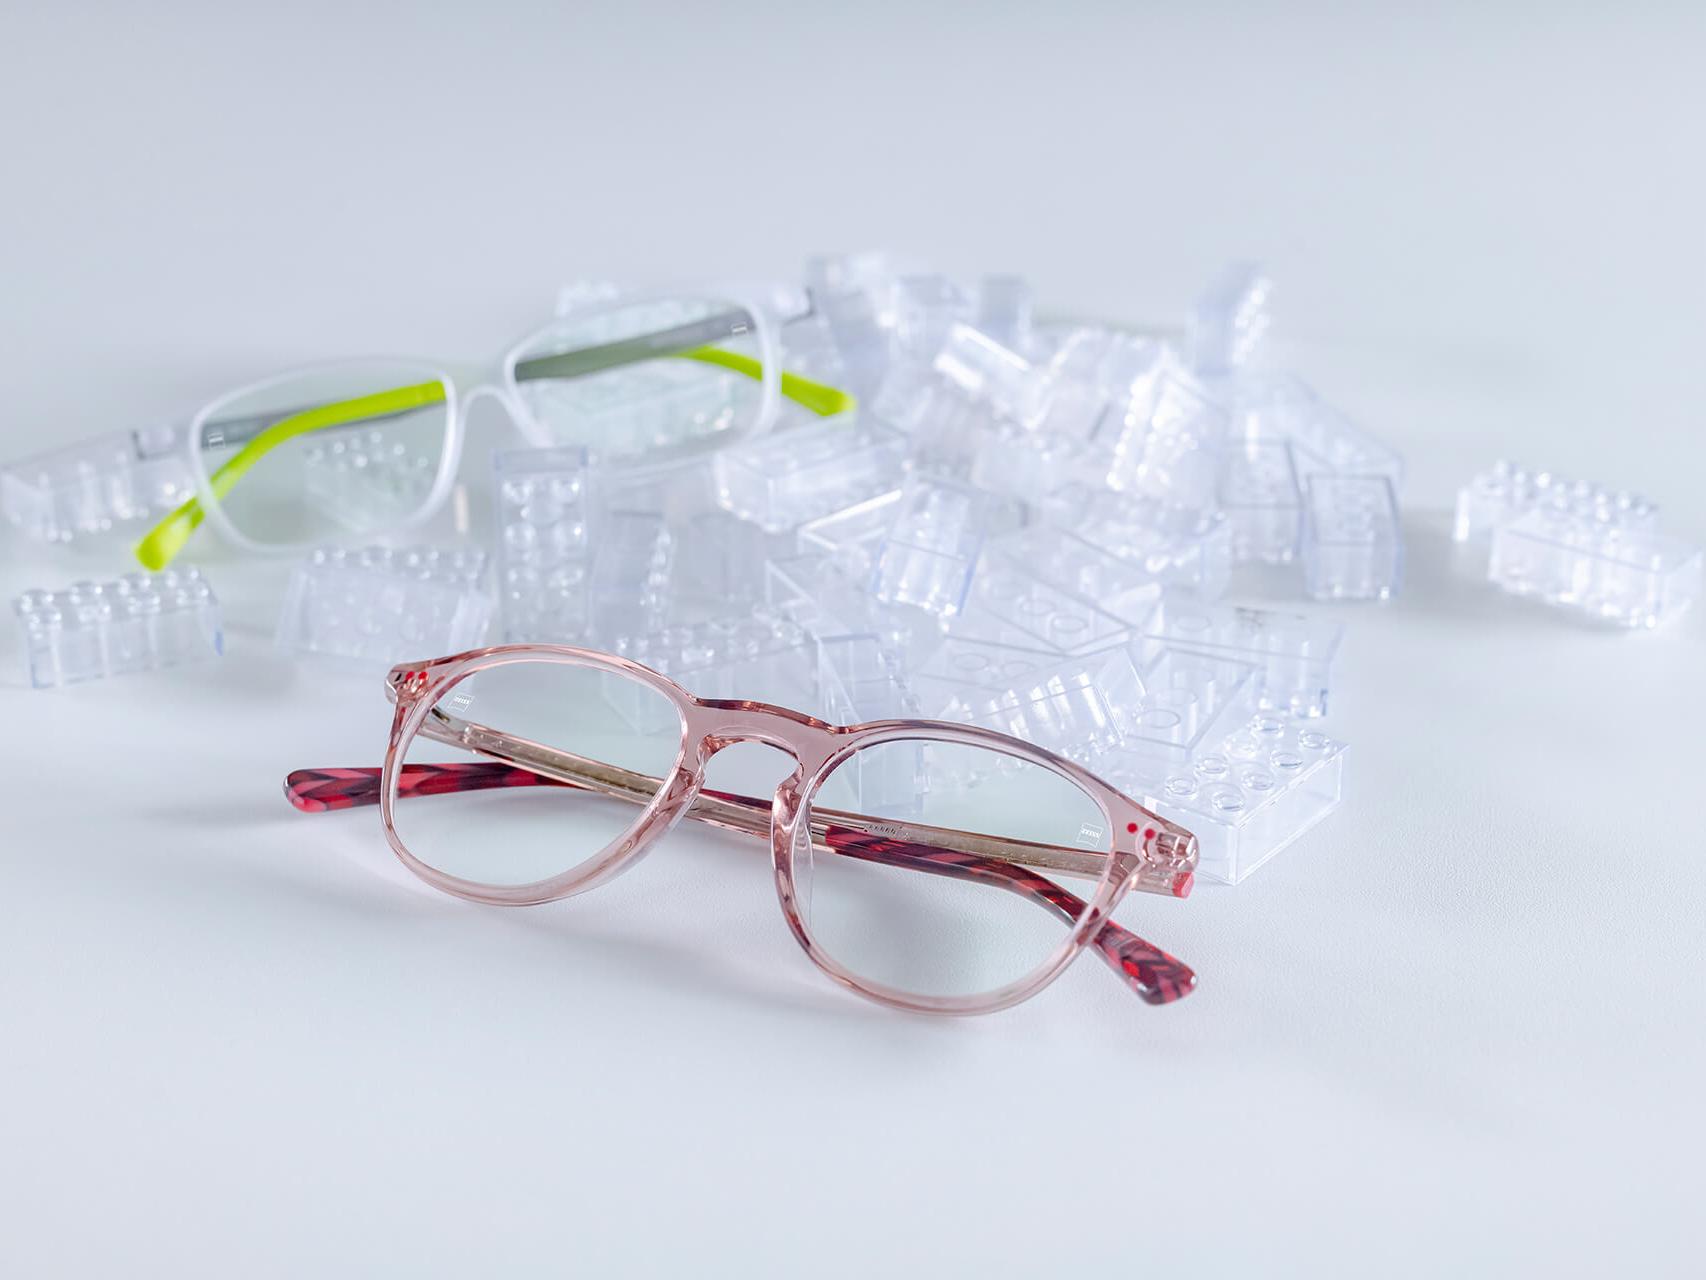 Deux paires de lunettes pour enfants avec des verres ZEISS et le traitement DuraVision® Kids. Les lunettes sont placées entre des briques de construction transparentes pour enfants.